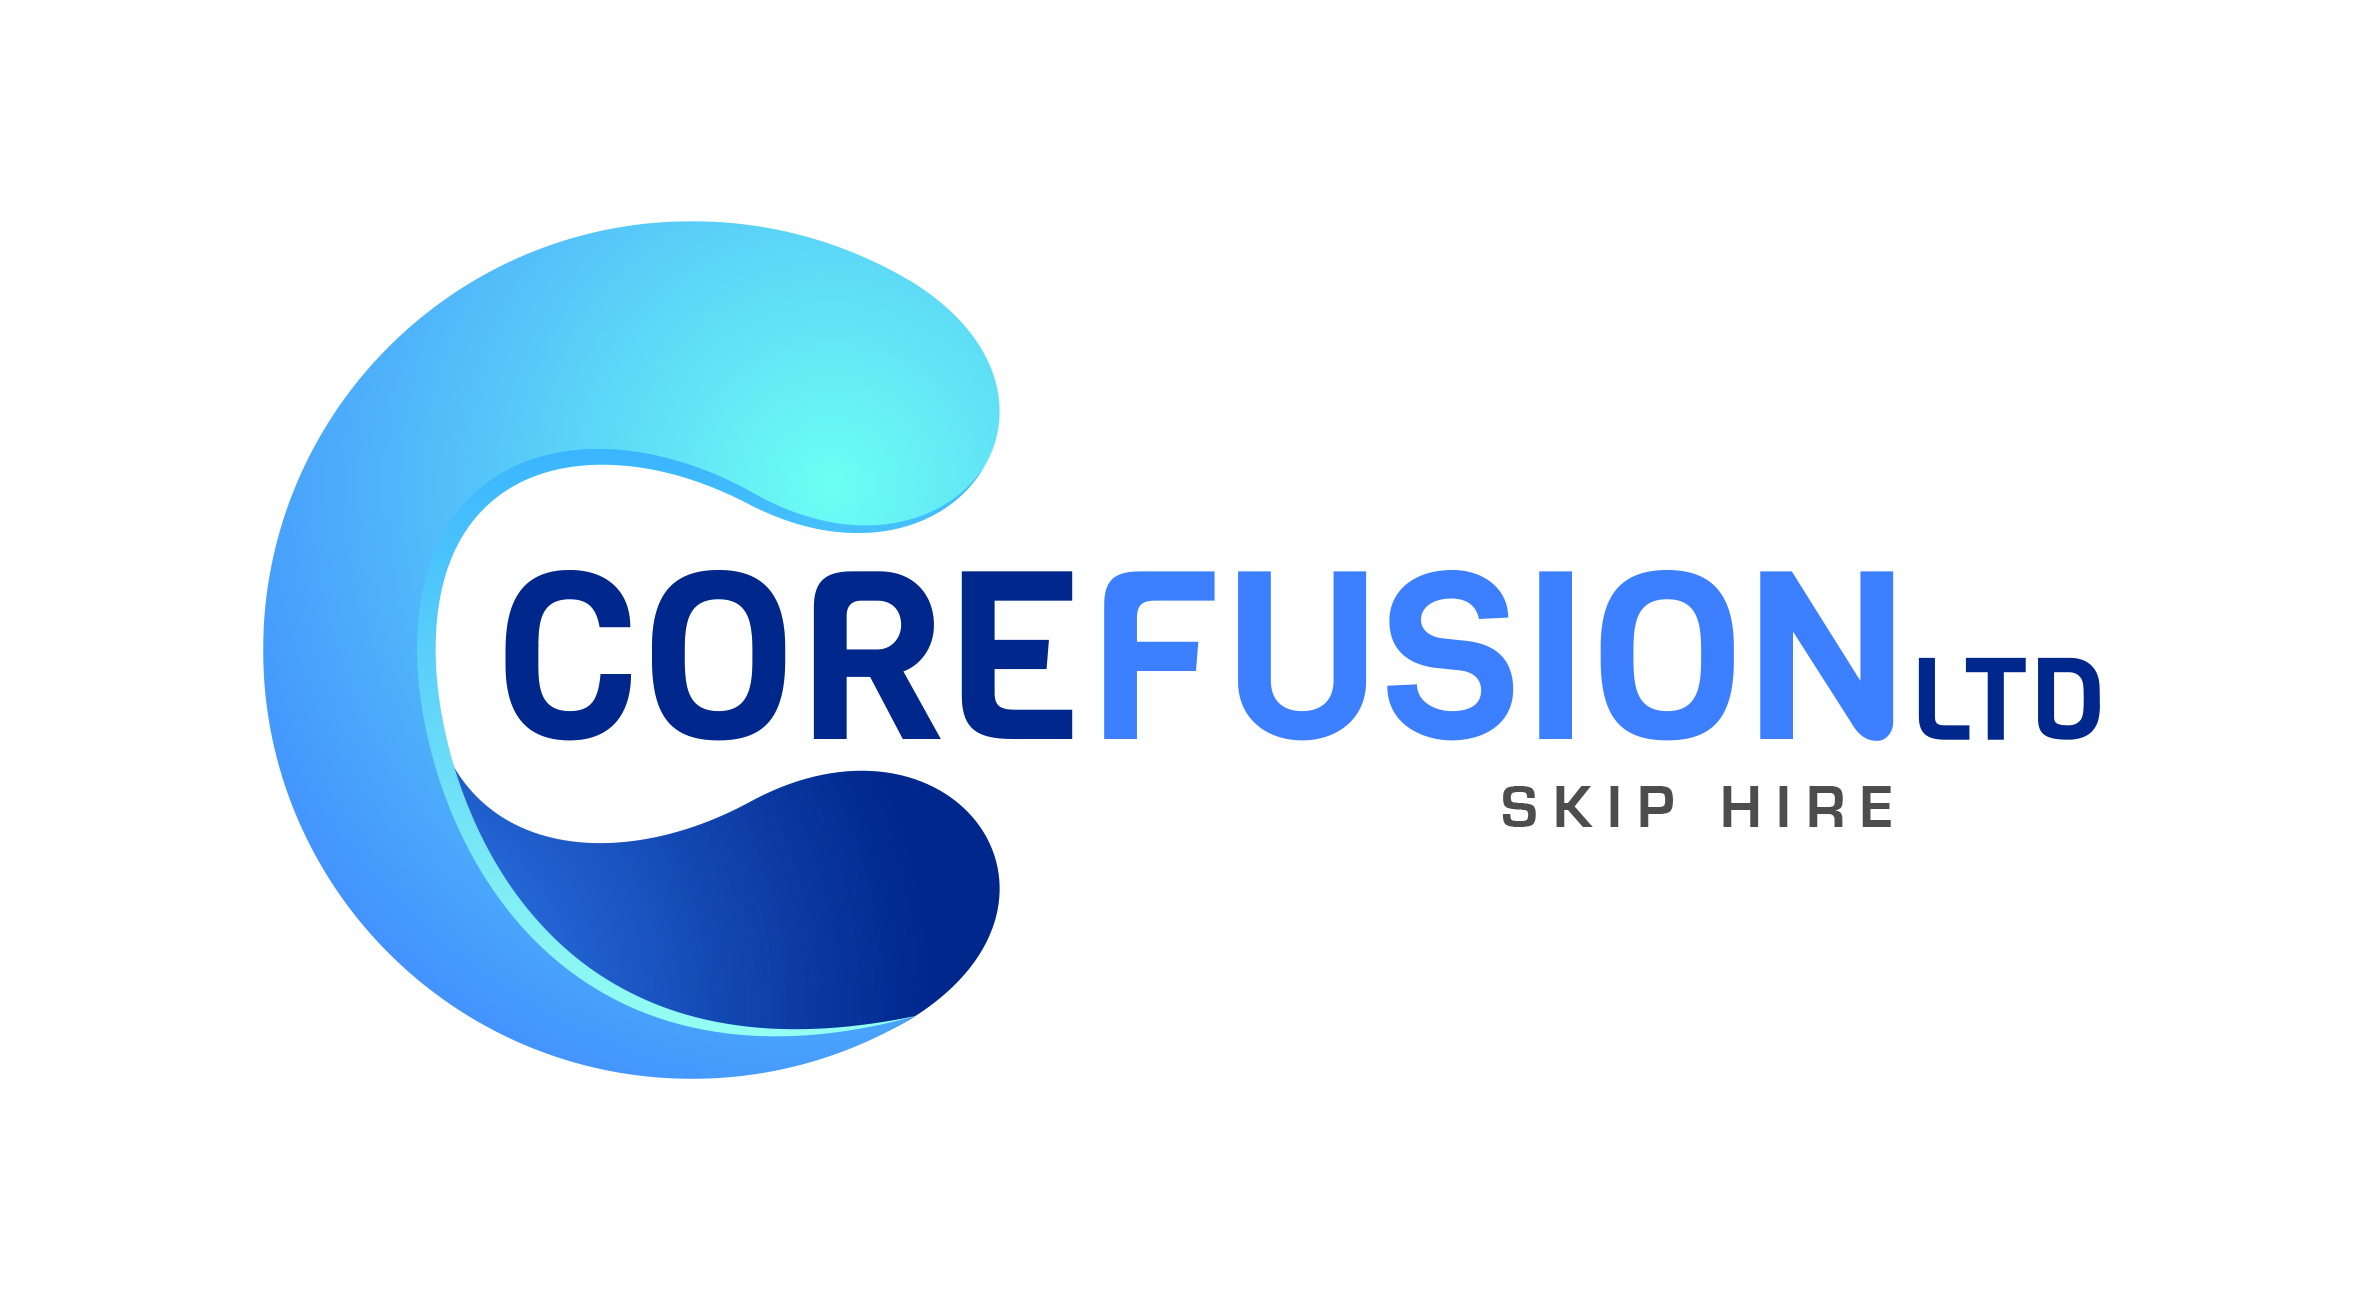 Core Fusion Skip Hire